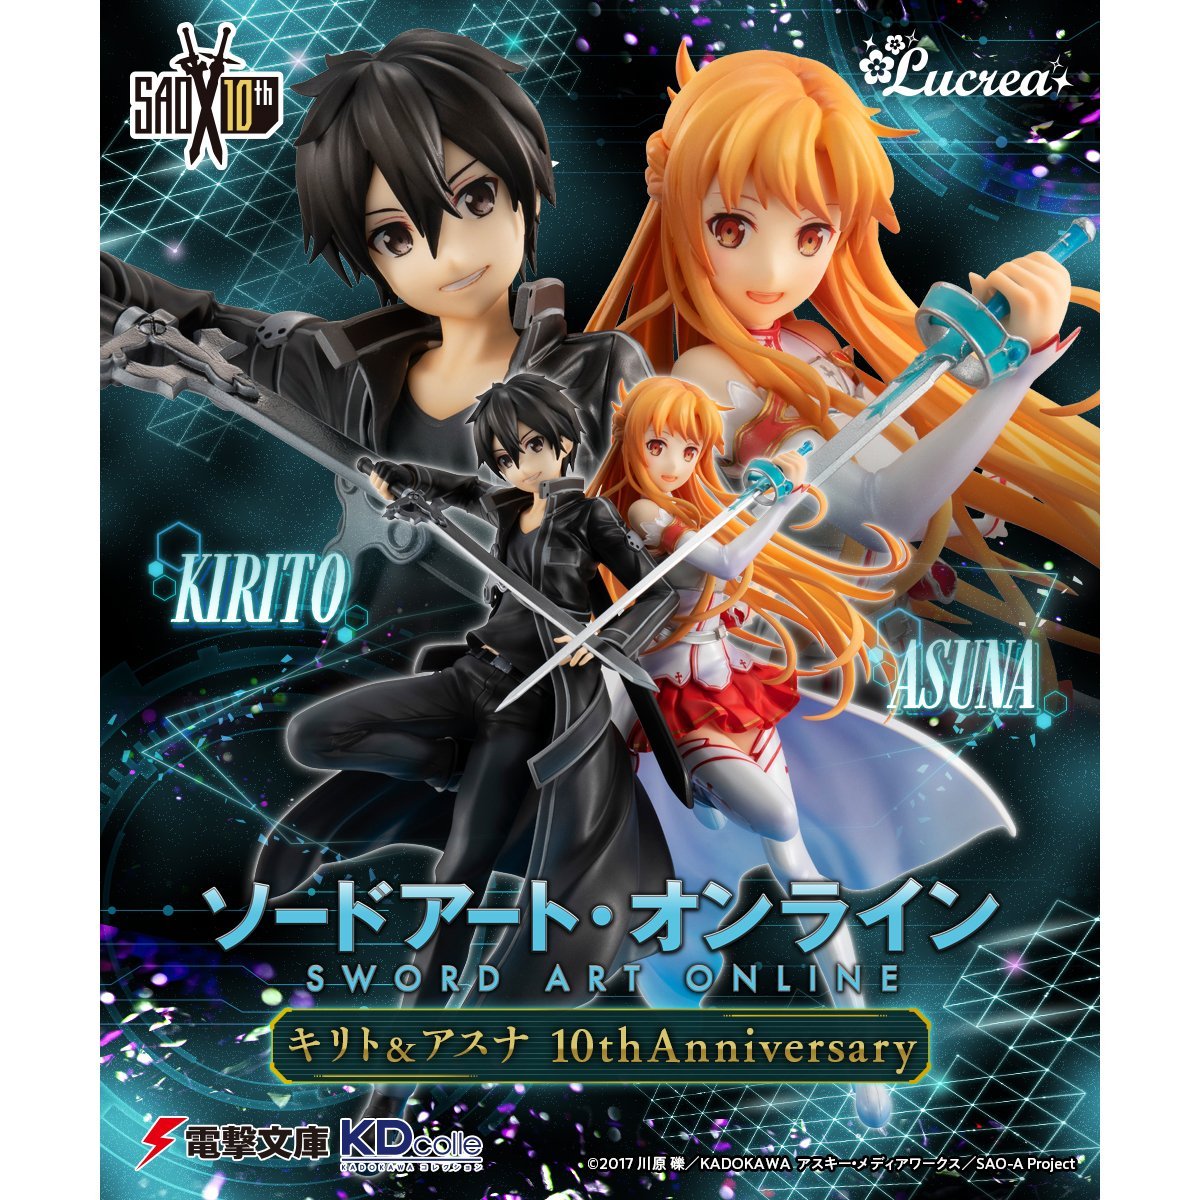 Sword Art Online -Lucrea- "Kirito & Asuna SAO 10th Anniversary"-MegaHouse-Ace Cards & Collectibles